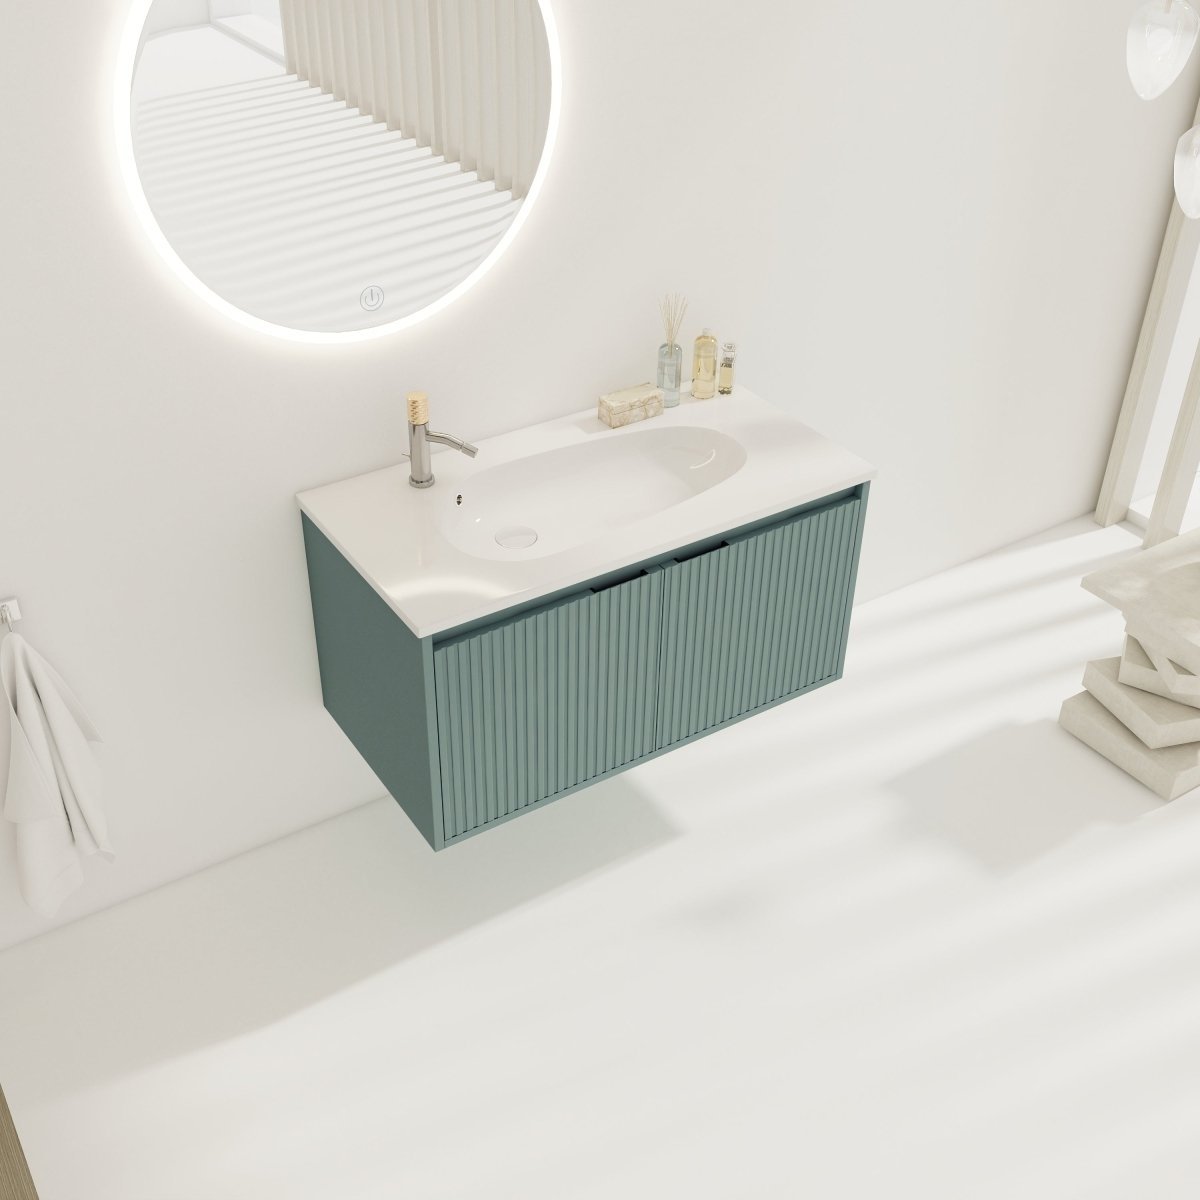 ExBrite 36 Floating Bathroom Vanity With Drop-Shaped Resin Sink